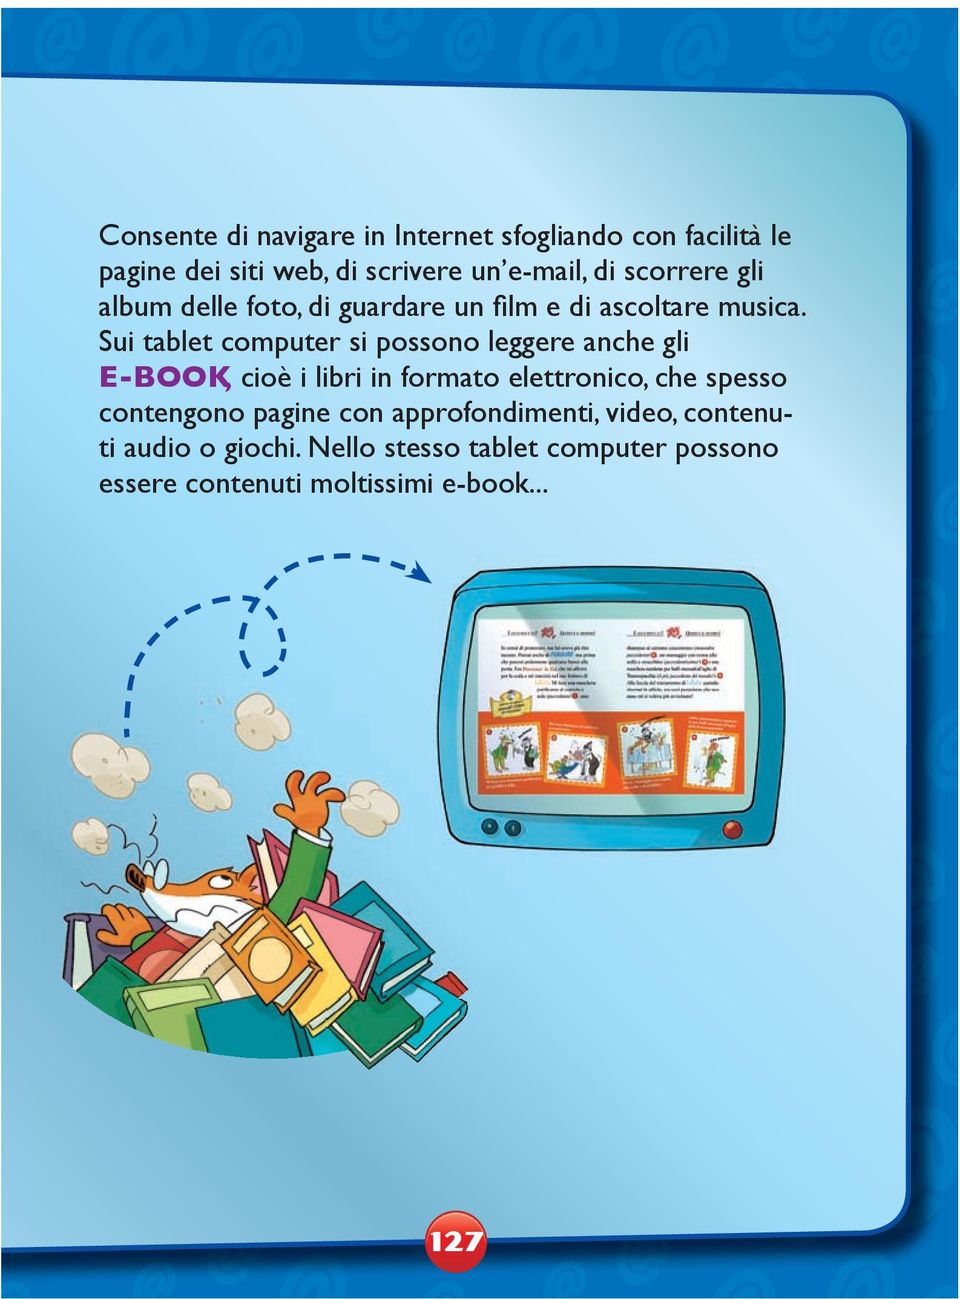 Sui tablet computer si possono leggere anche gli E-BOOK, cioè i libri in formato elettronico, che spesso